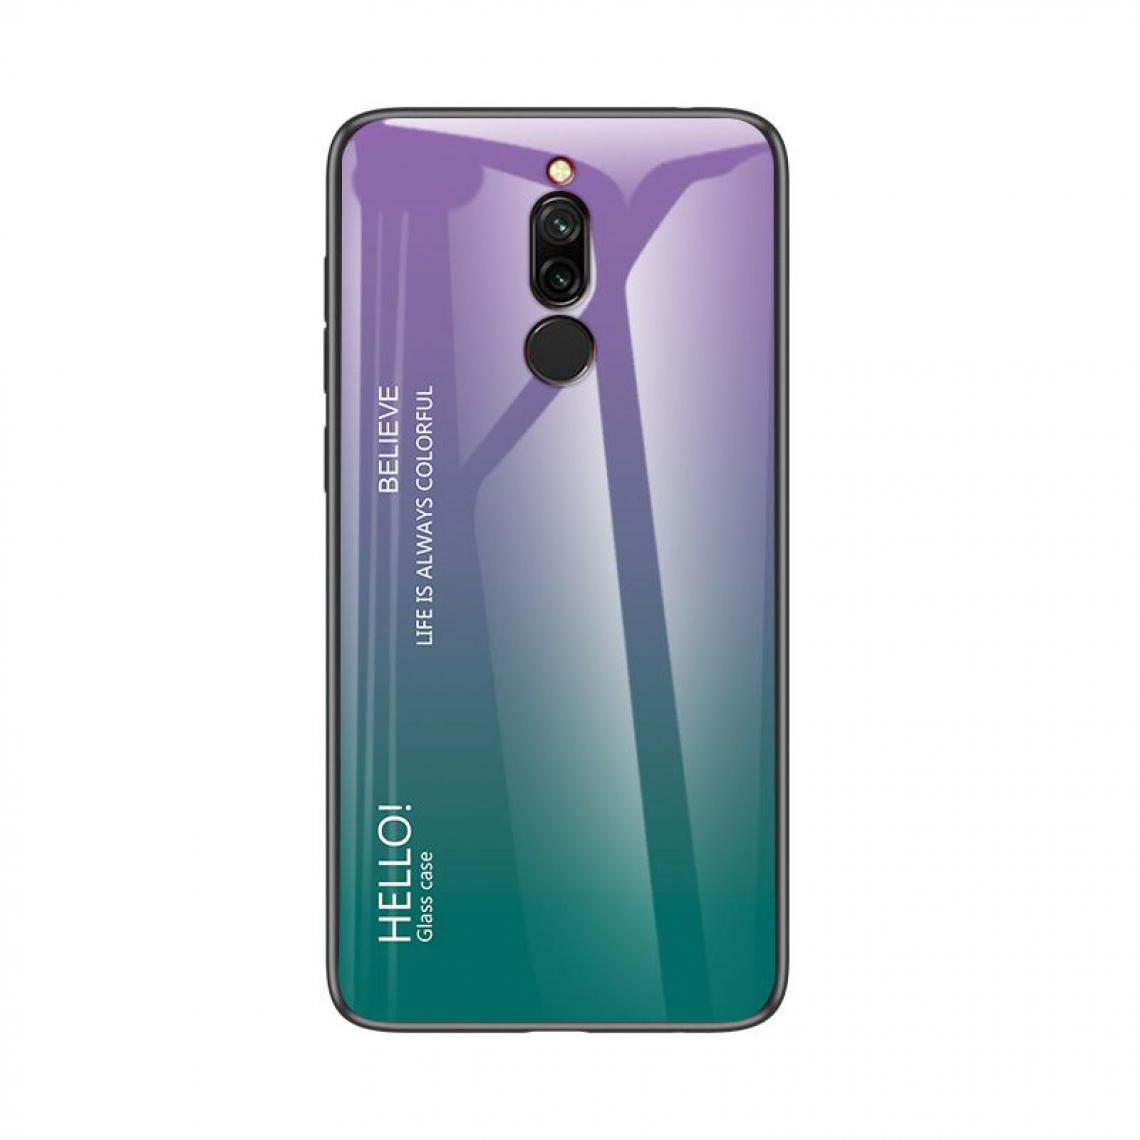 OtterBox - Housse Etui Coque de protection pour Xiaomi Redmi 8 Arriere Rigide dégradé [Violet] - Coque, étui smartphone